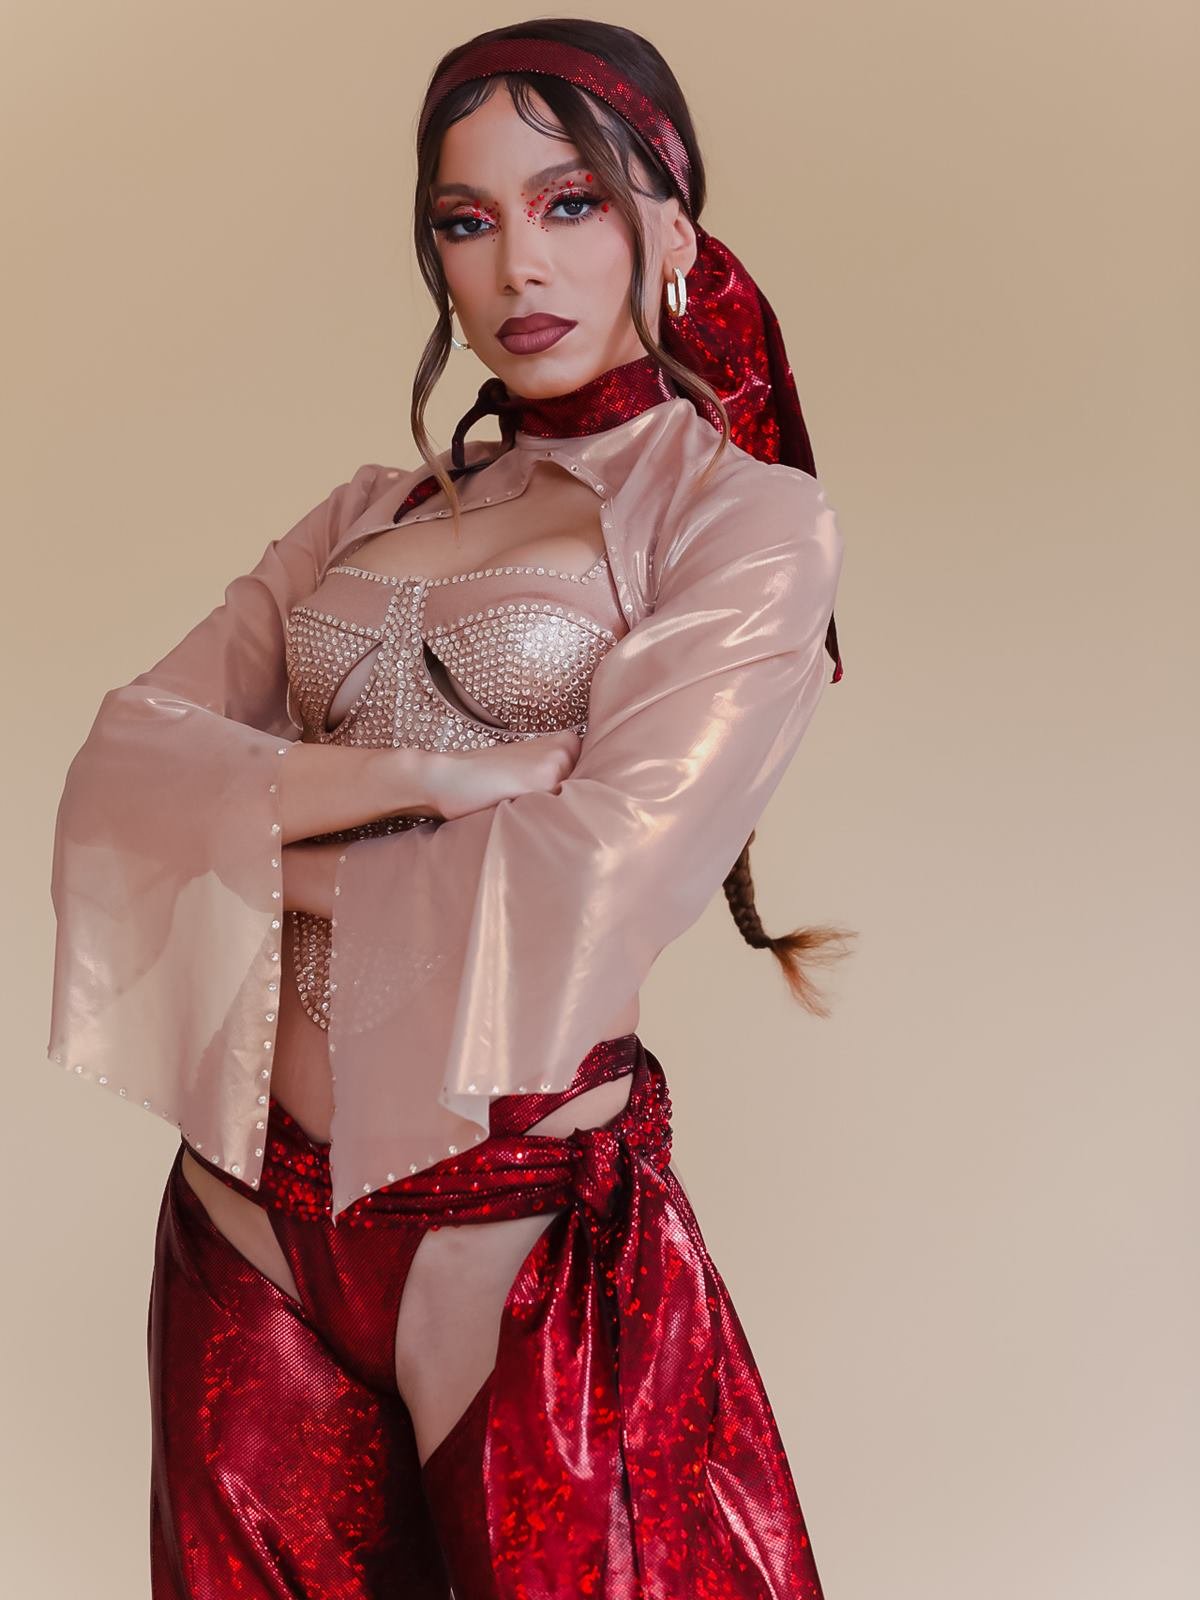 A cantora Anitta, uma mulher parda e jovem, de cabelo ondulado castanho, posa para foto em um fundo bege. Ela usa uma roupa brilhante, rosa e vermelha, feita inspirada nas roupas da revolucionária Anita Garibaldi. - Zig Proxy